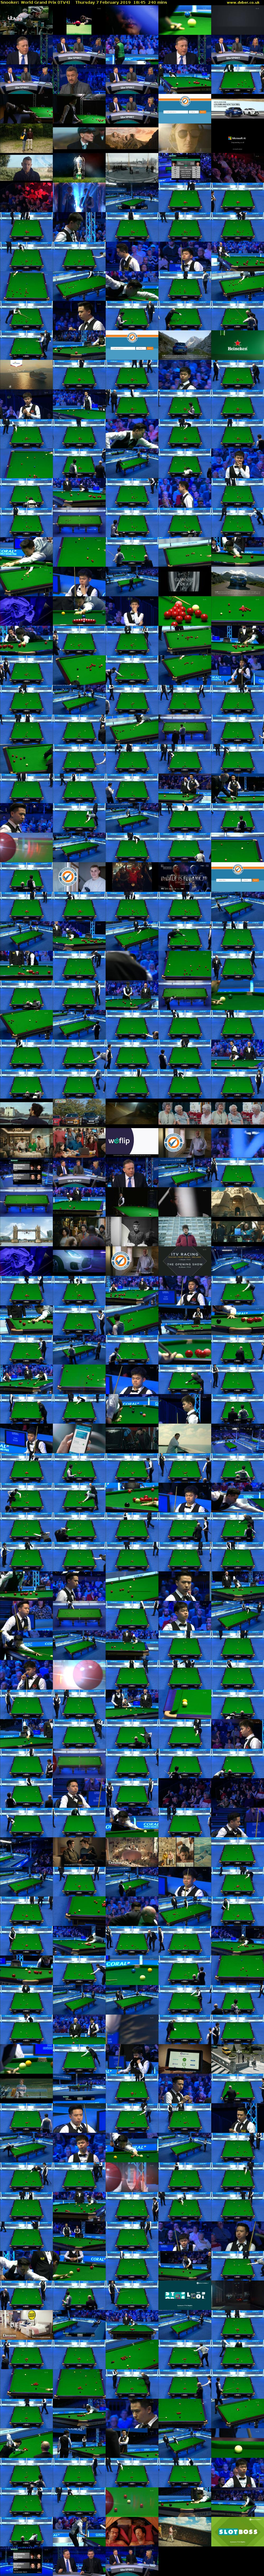 Snooker: World Grand Prix (ITV4) Thursday 7 February 2019 18:45 - 22:45